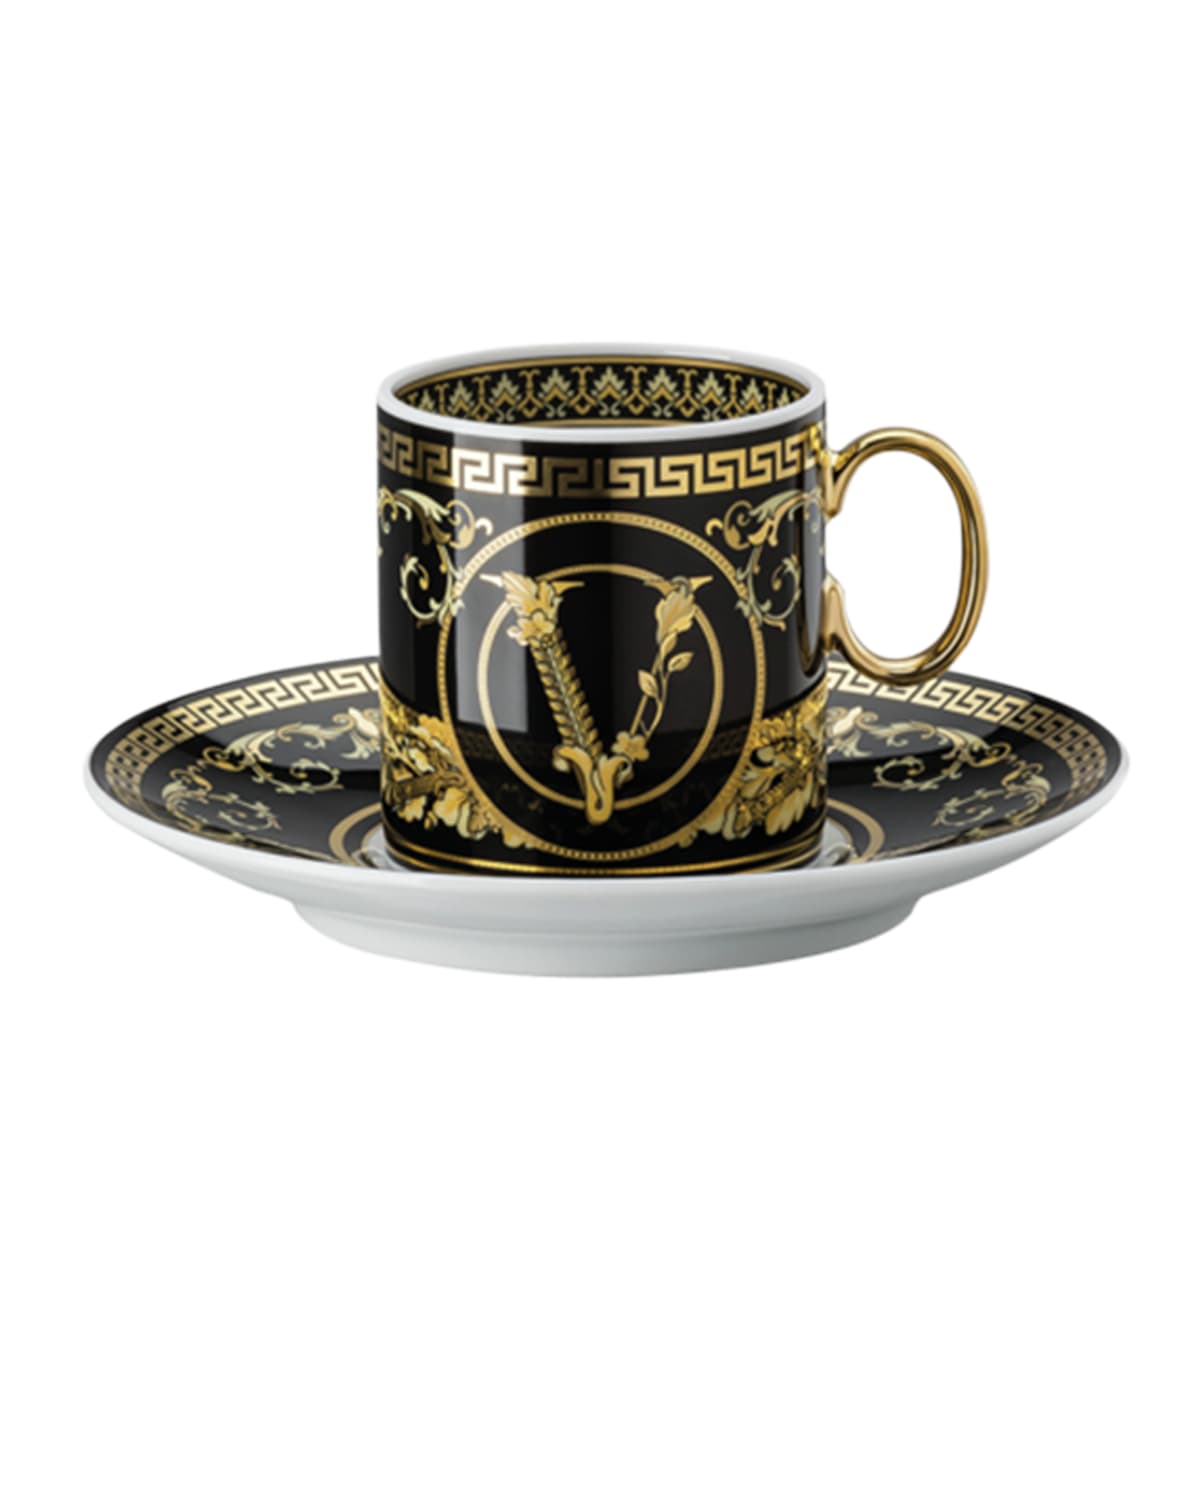 Versace Virtus Gala Black Ad Cup & Saucer